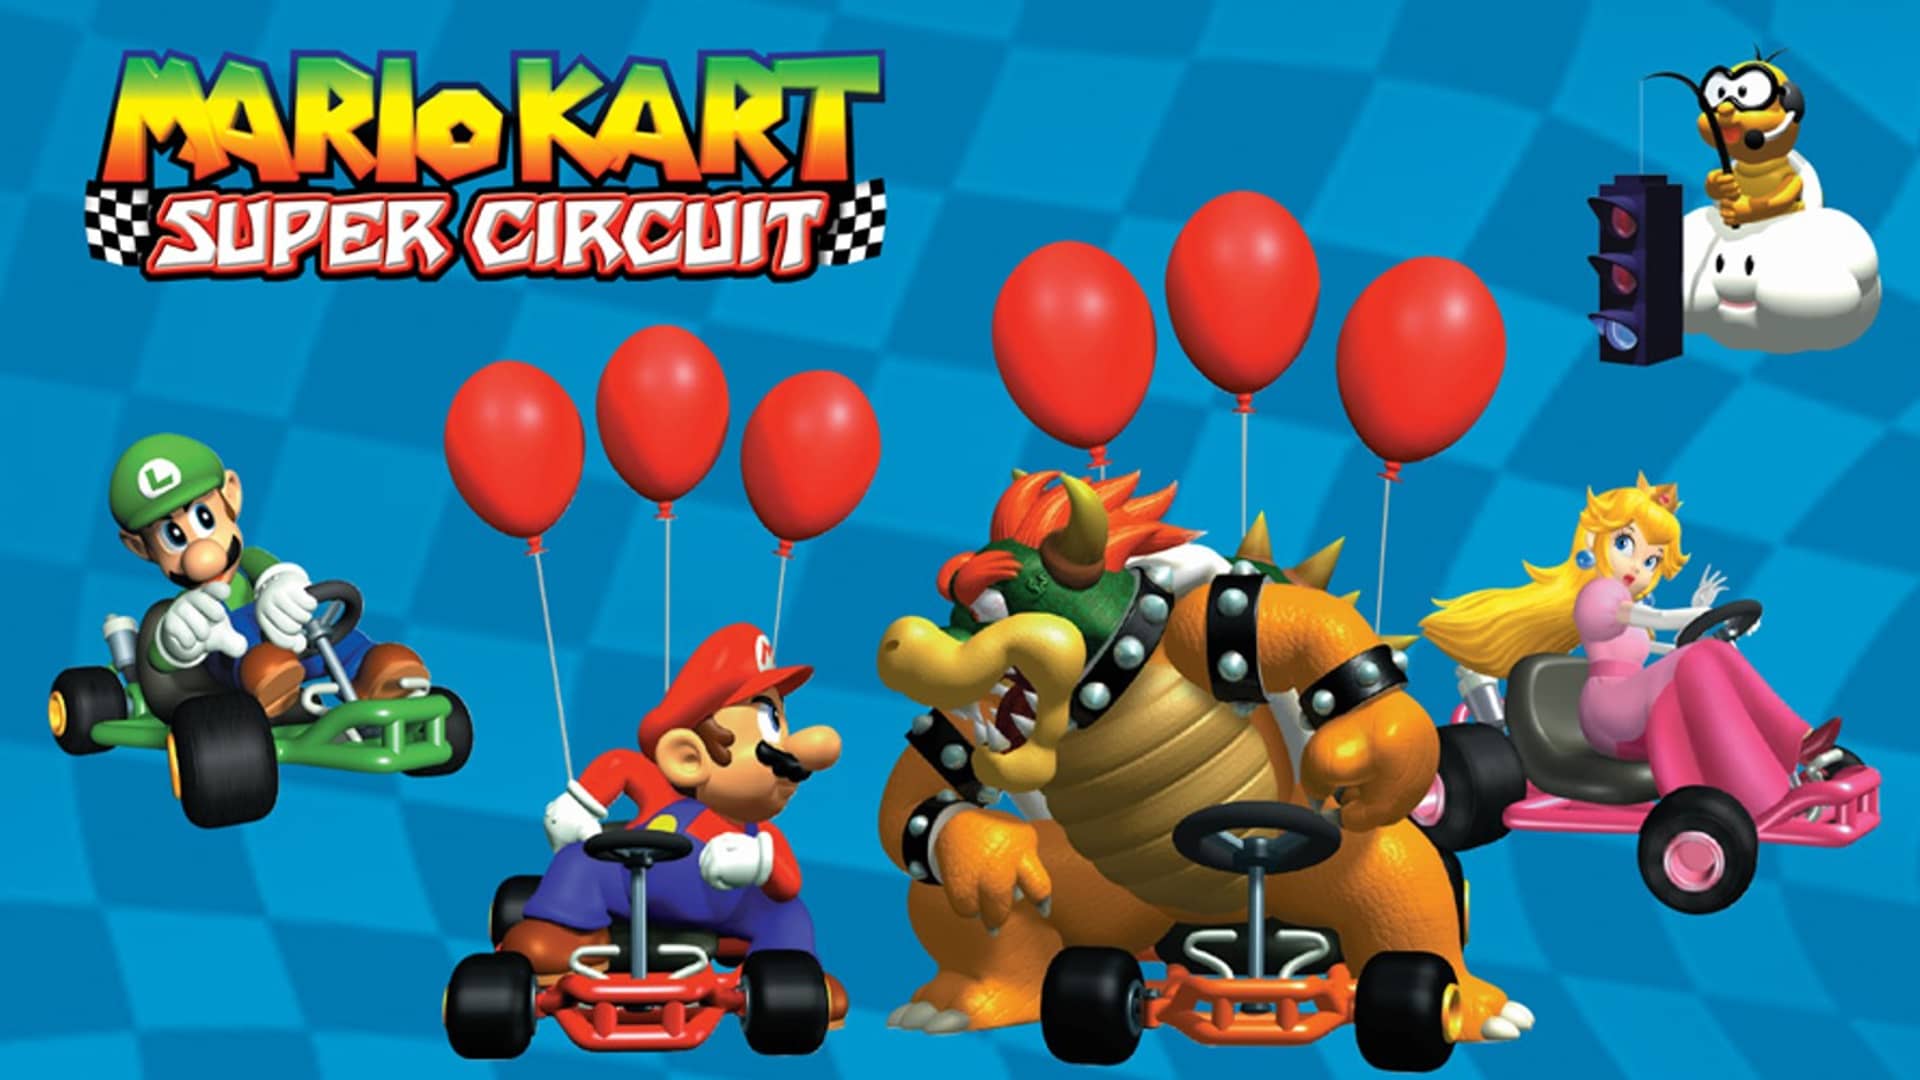 artwork del videojuego mario kart super circuit uno de los mejores juegos de bga